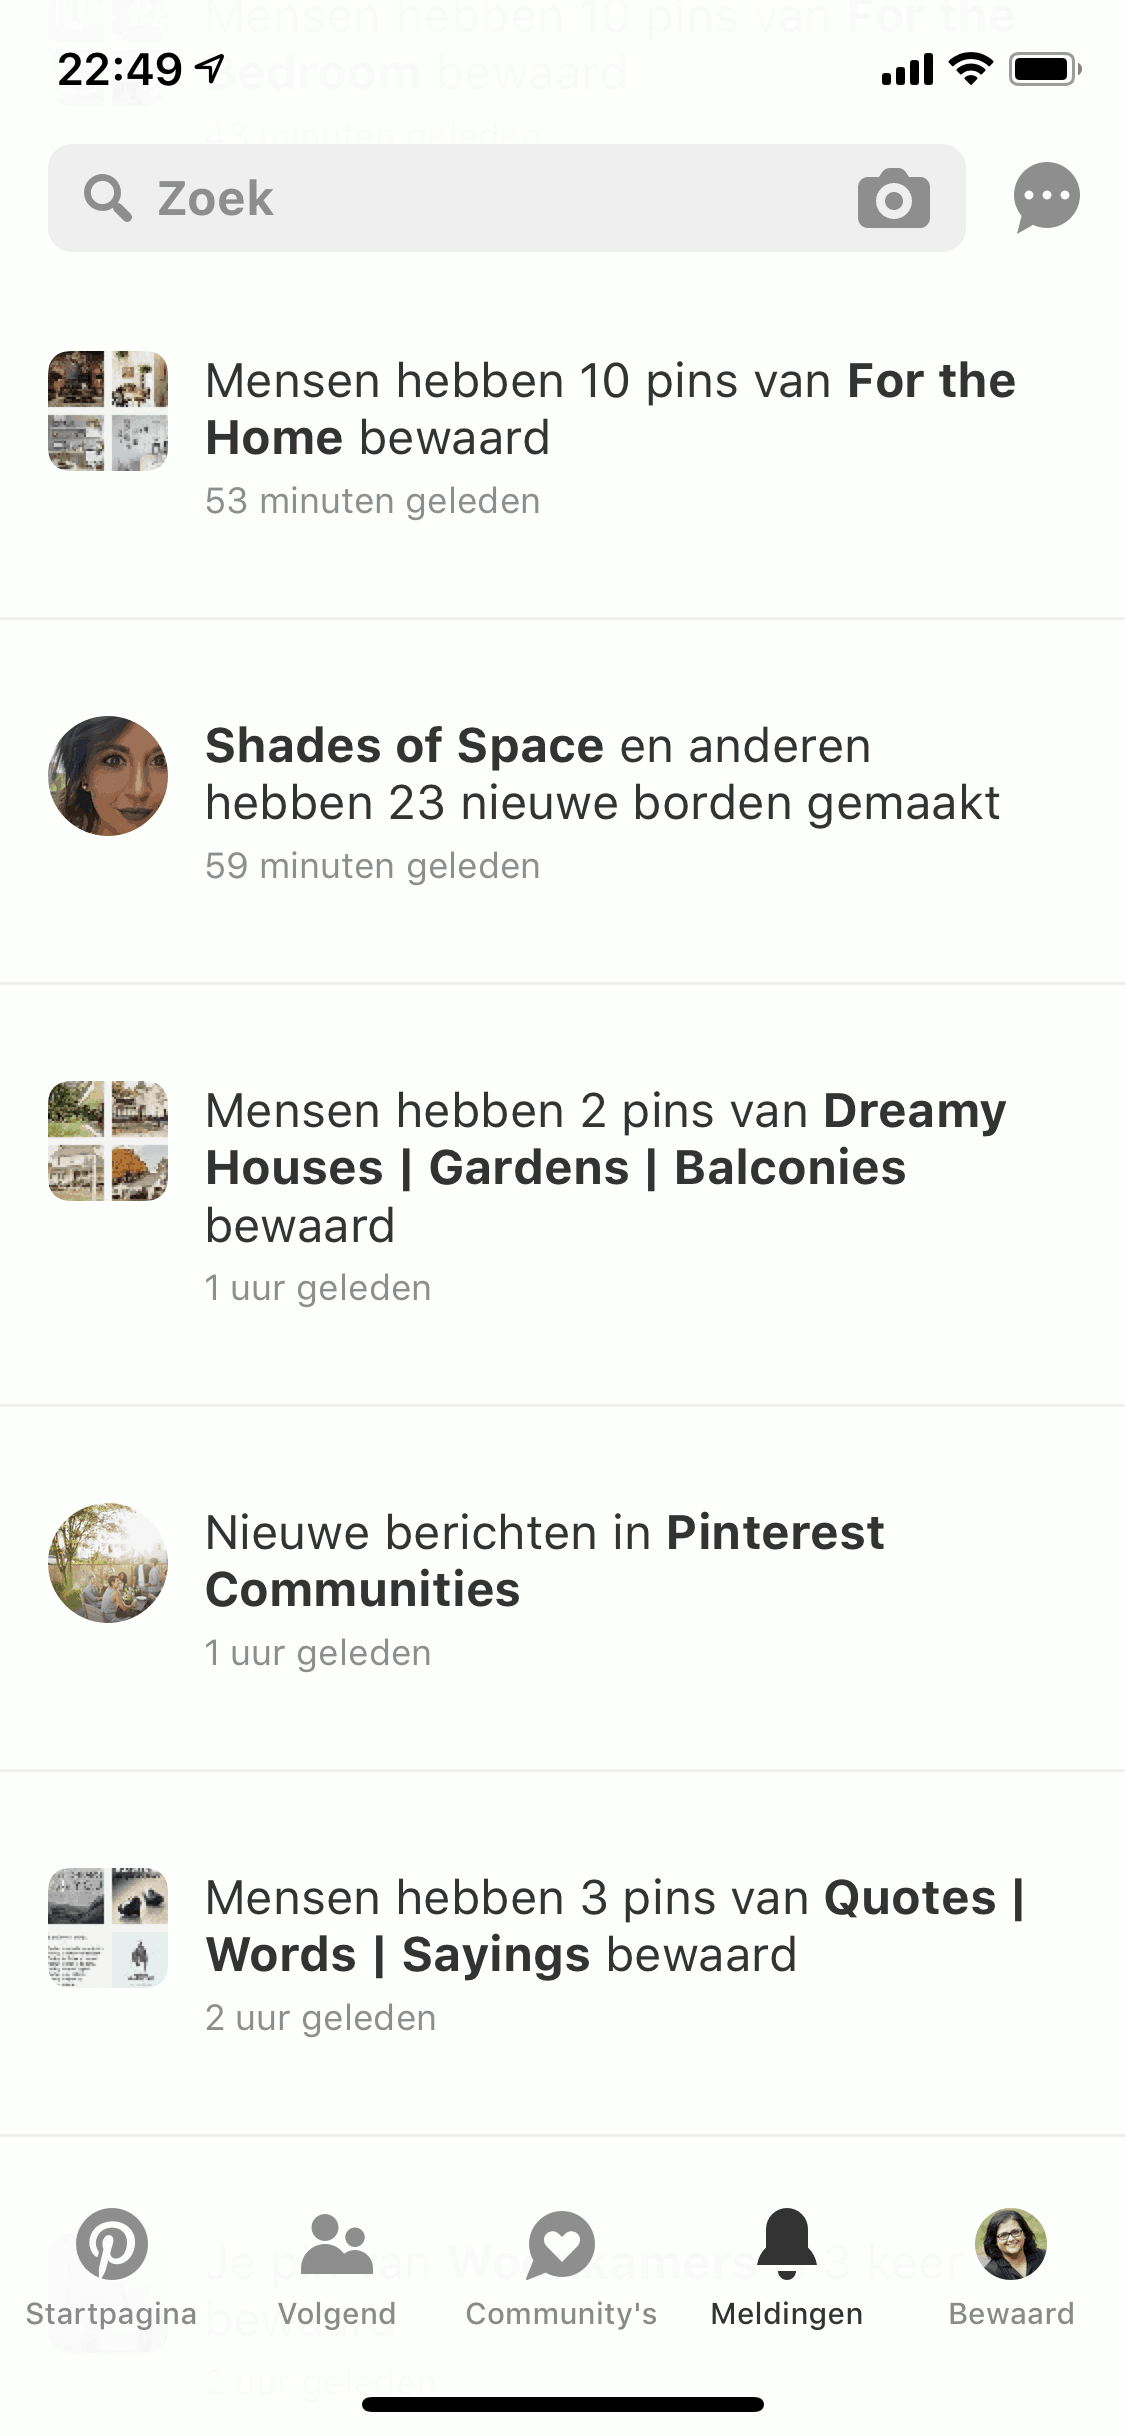 Pinterest app 2019 - Pinterest Nederland - ARCHANA.NL #pinterest #pinterestnederland